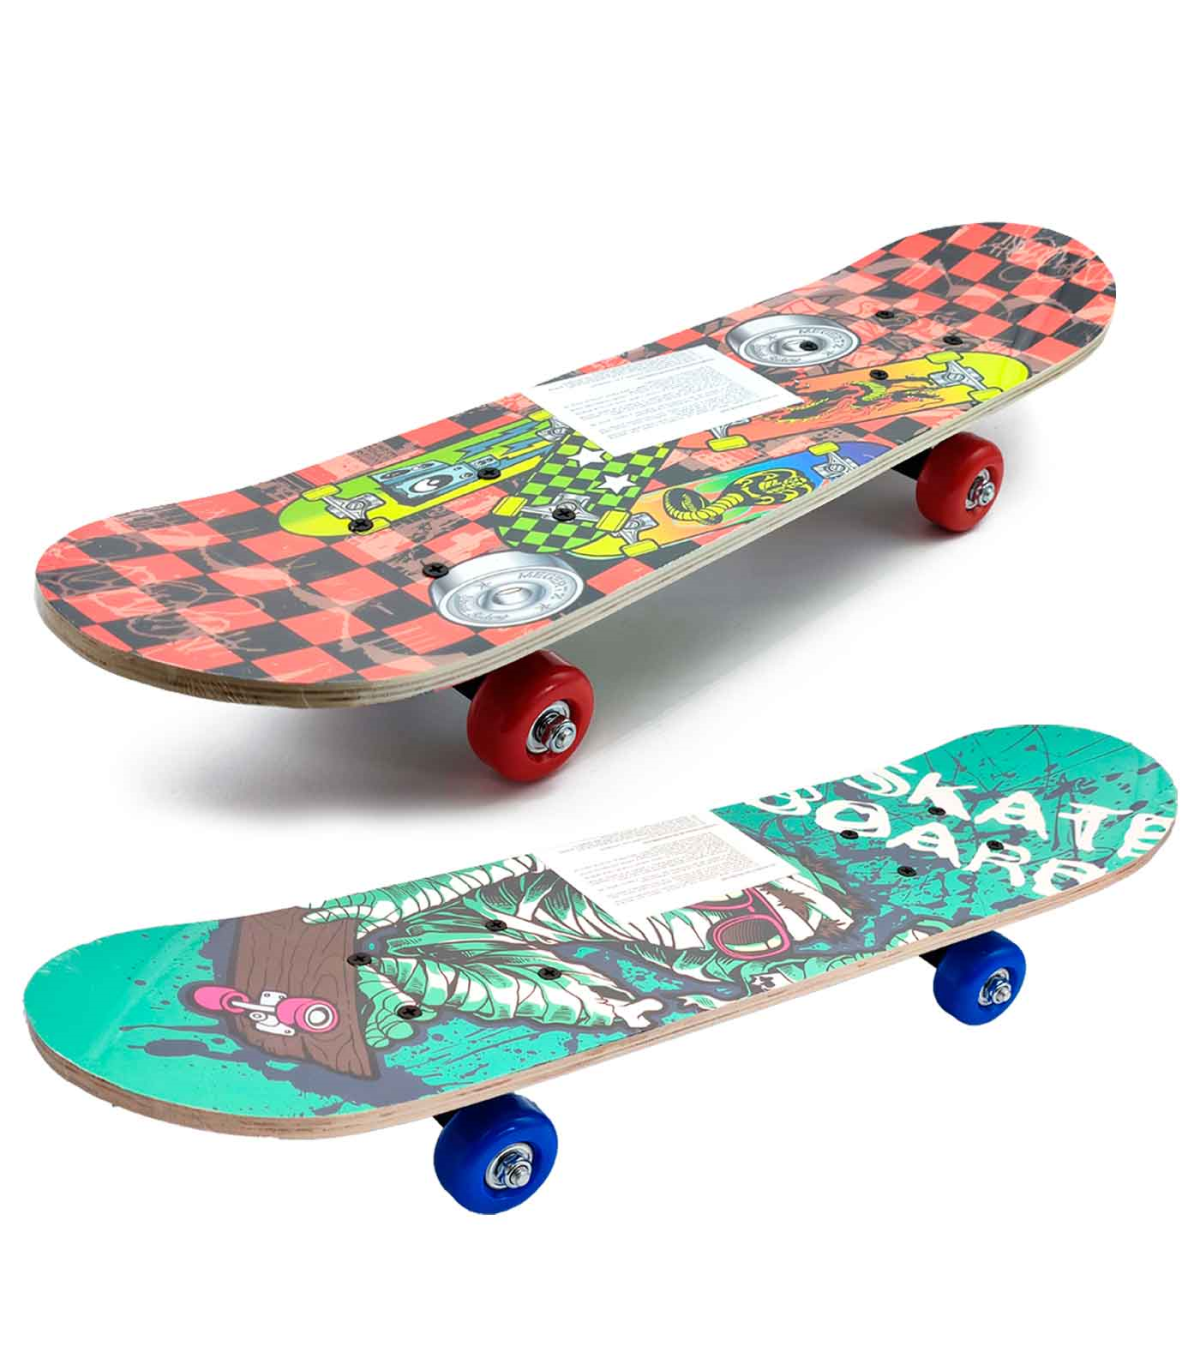 Tradineur - Skateboard para niños y jóvenes - Fabricado en madera -  Compacto y resistente, divertido de conducir - 14,5 x 58,2 c